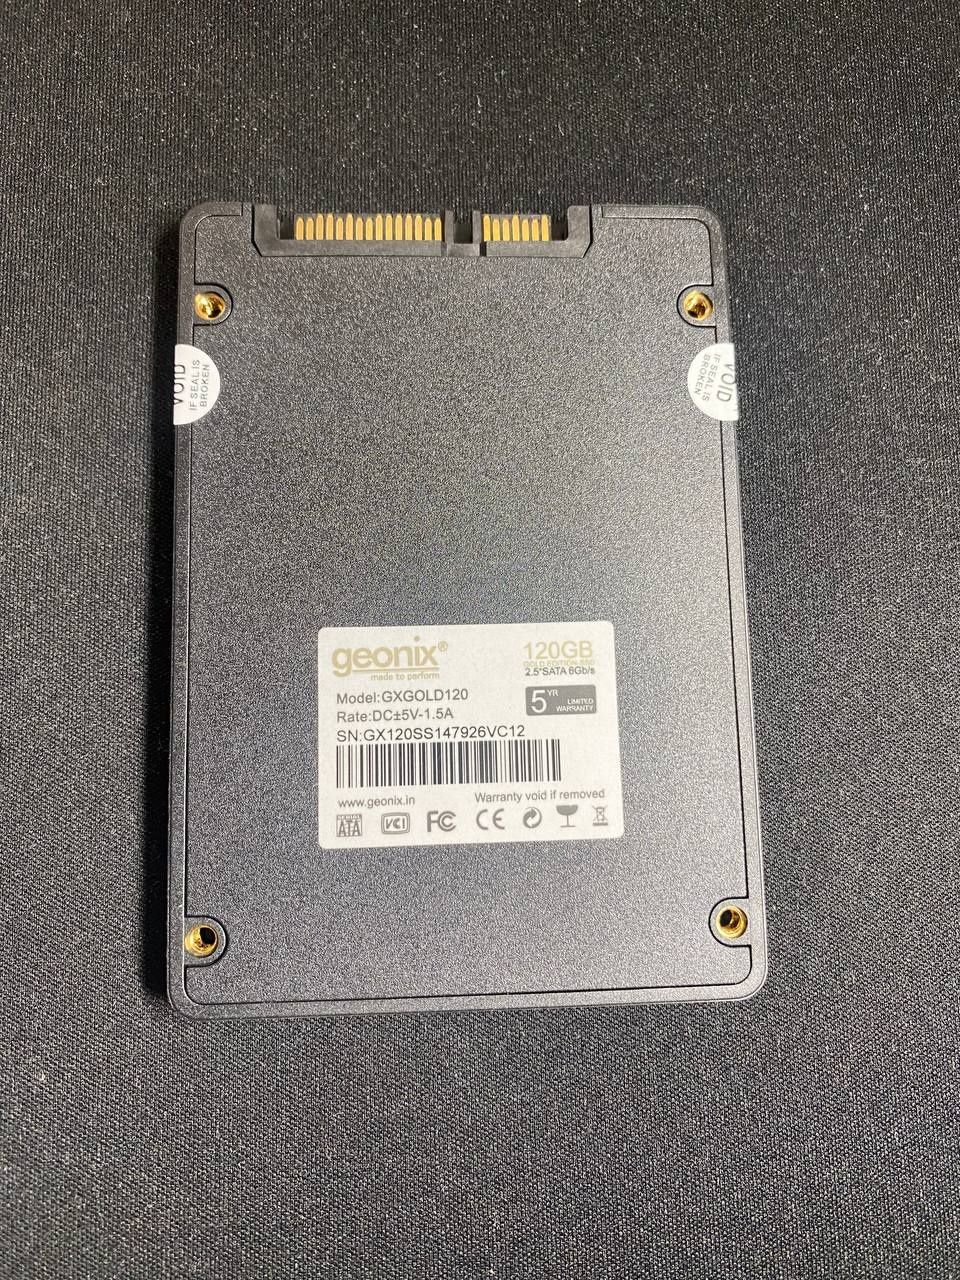 SSD-120 гигабайт  GEONIX NEW есть в количестве , гарантия 6 месяцев